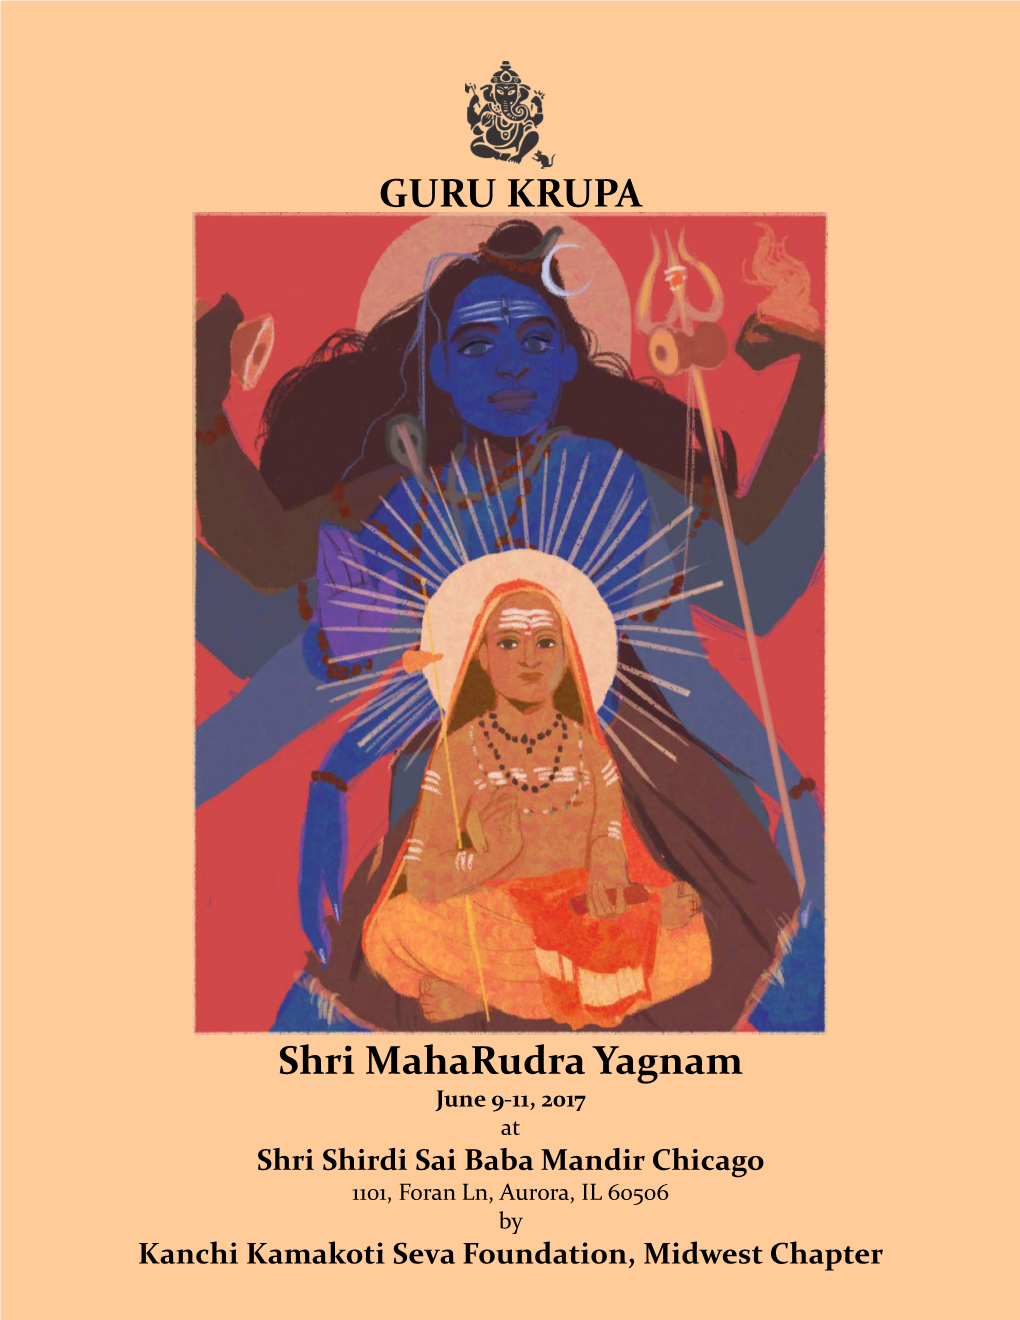 Shri Maharudra Yagnam GURU KRUPA